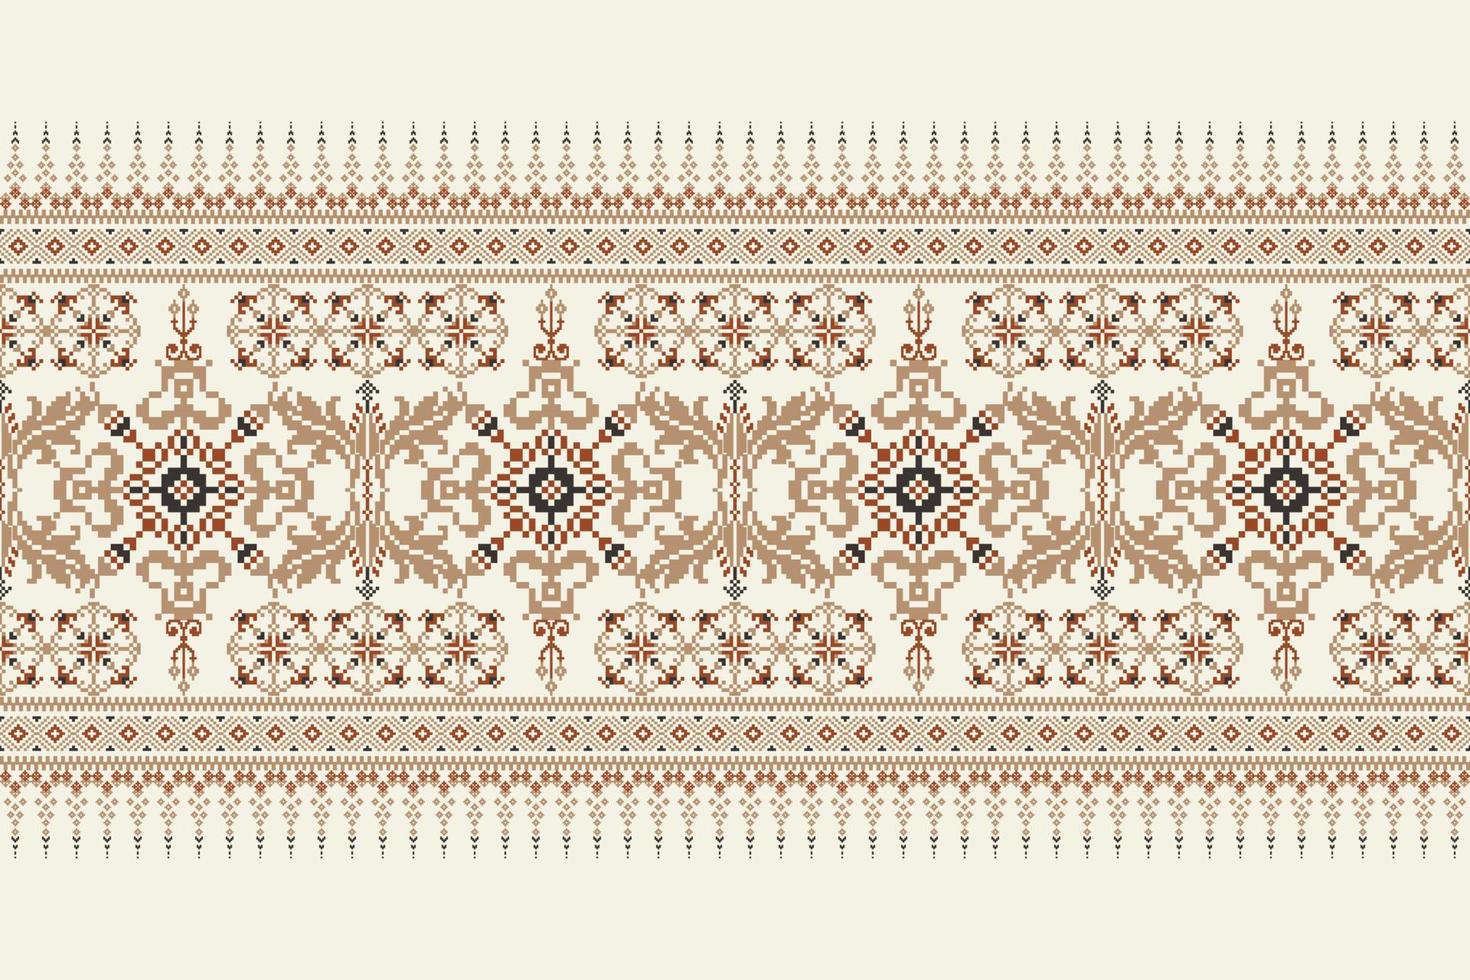 géométrique floral traverser point broderie sur blanc contexte.ethnique Oriental modèle traditionnel.aztèque style abstrait vecteur illustration.design pour texture, tissu, vêtements, emballage, décoration, écharpe.